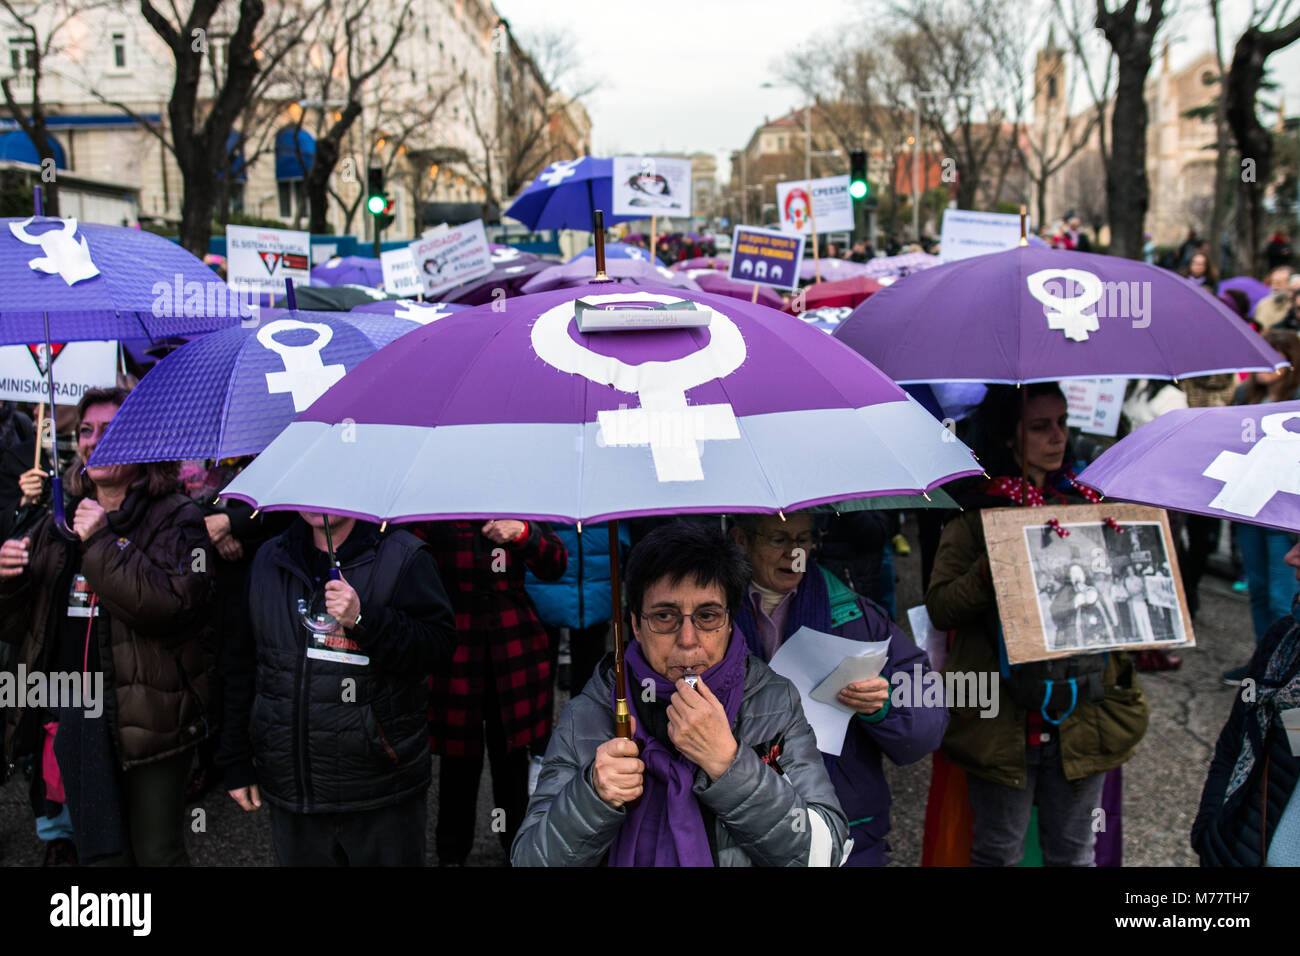 Madrid, Espagne. 8 mars, 2018. Protestant contre les femmes au cours de la Journée internationale des femmes à Madrid, Espagne. Credit : Marcos del Mazo/Alamy Live News Banque D'Images